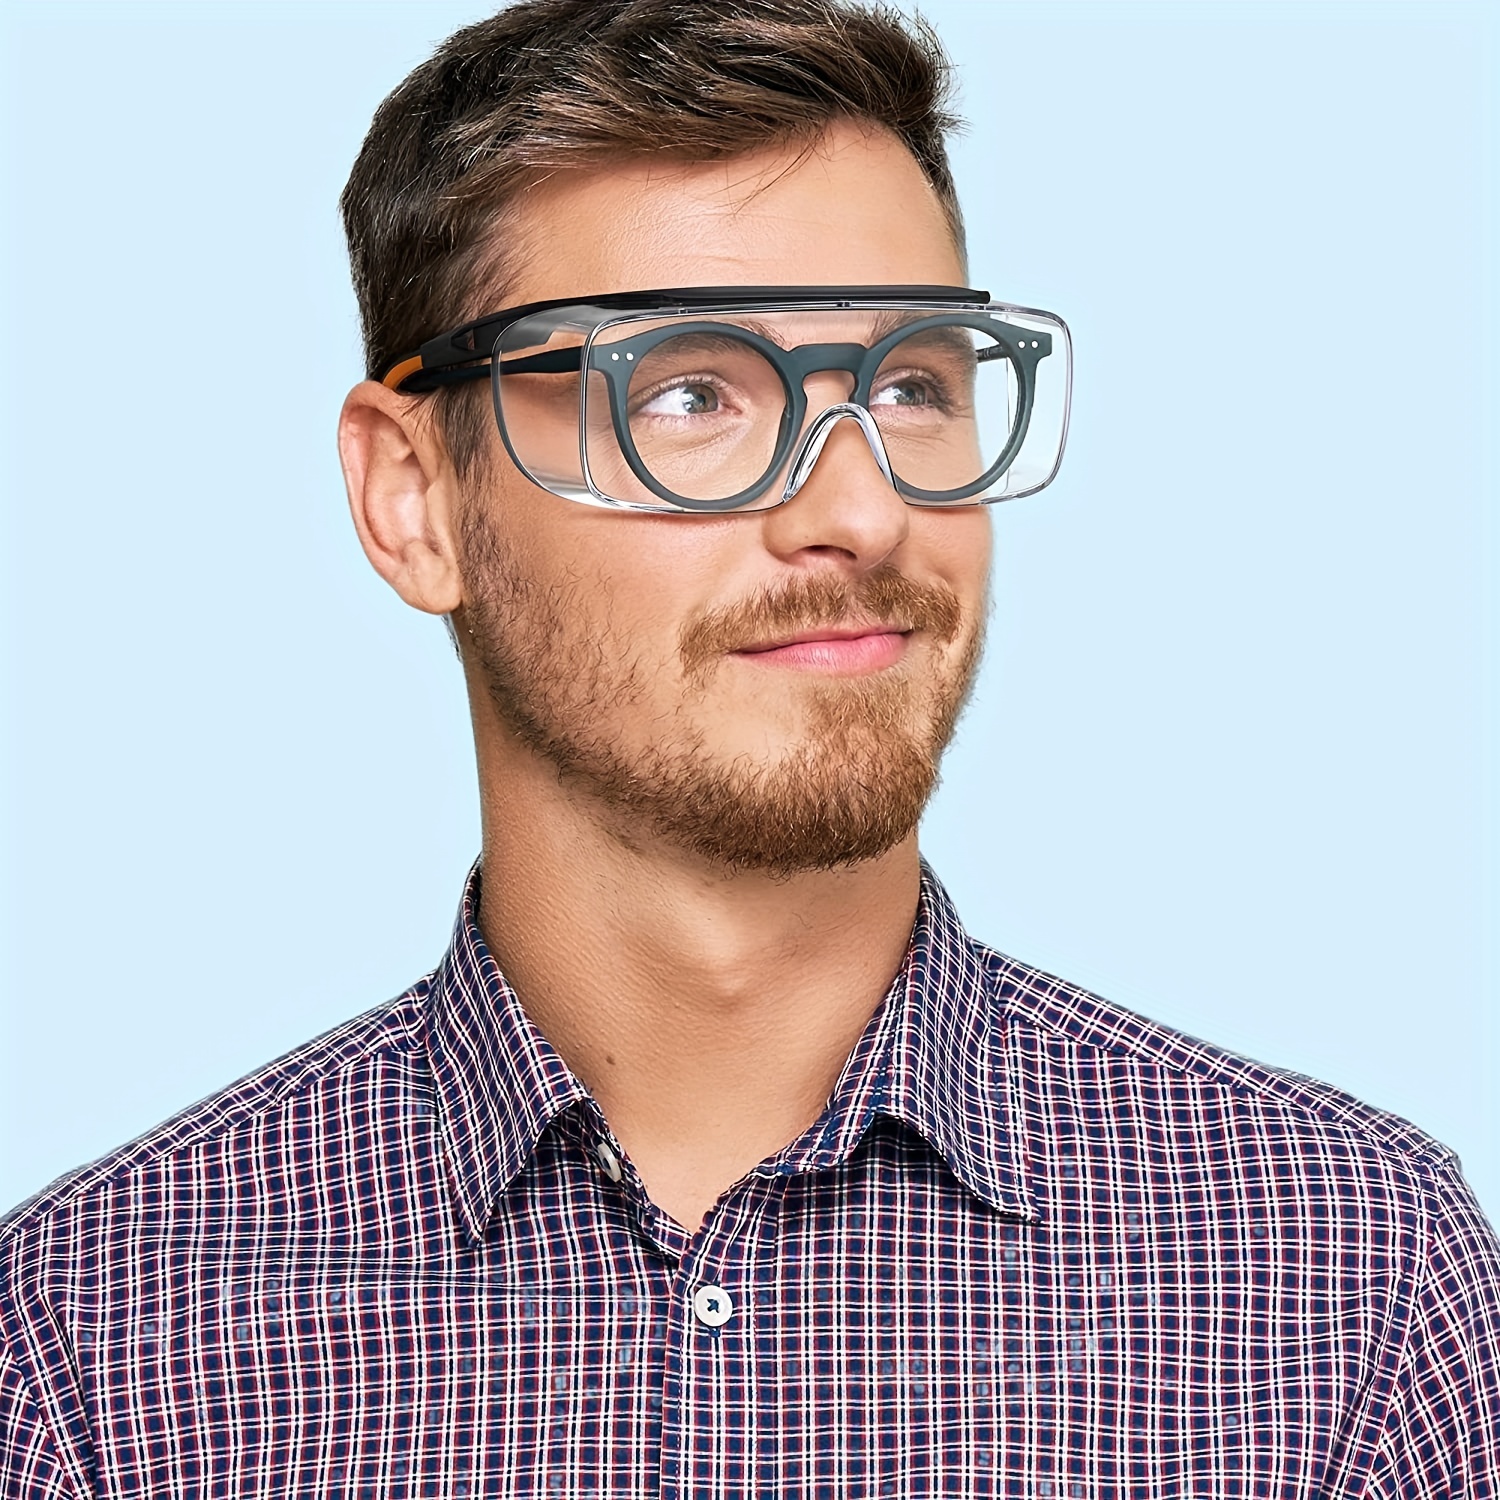 Gafas De Seguridad Para Protección Ocular Que Se Ajustan Sobre Las Gafas,  Unisex, Lentes Transparentes Con Revestimiento Antiempañamiento, Gafas De Se